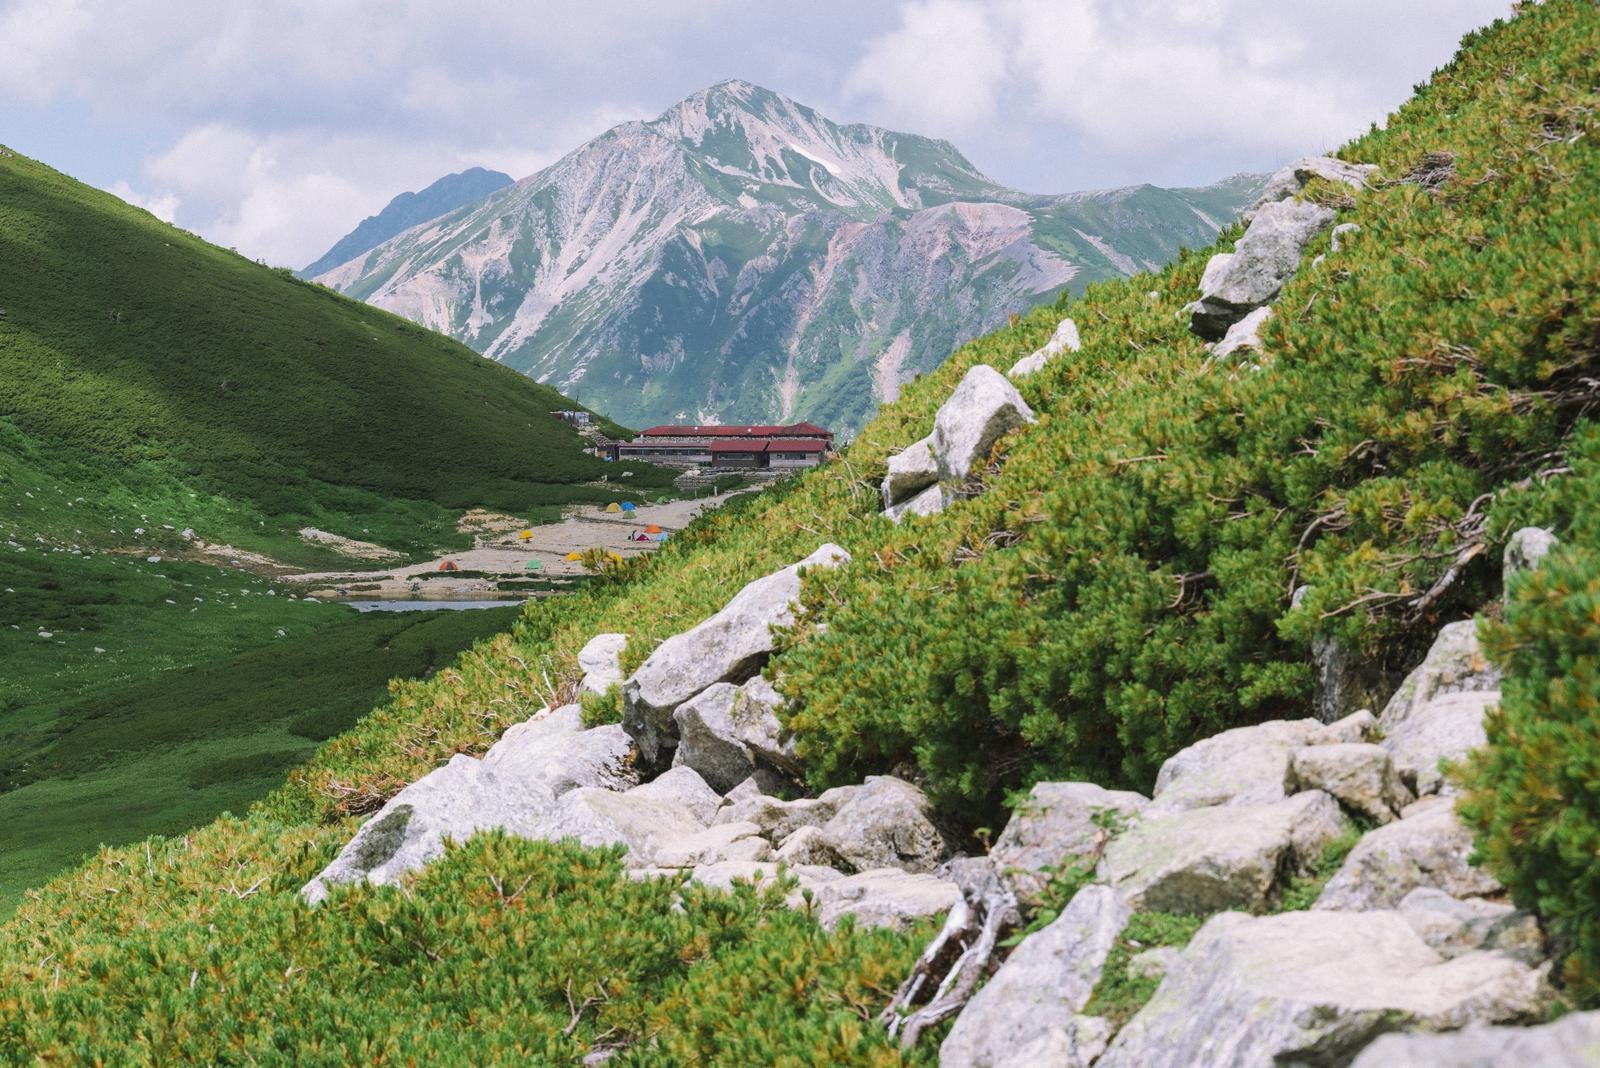 「双六山荘と鷲羽岳を眺める」の写真